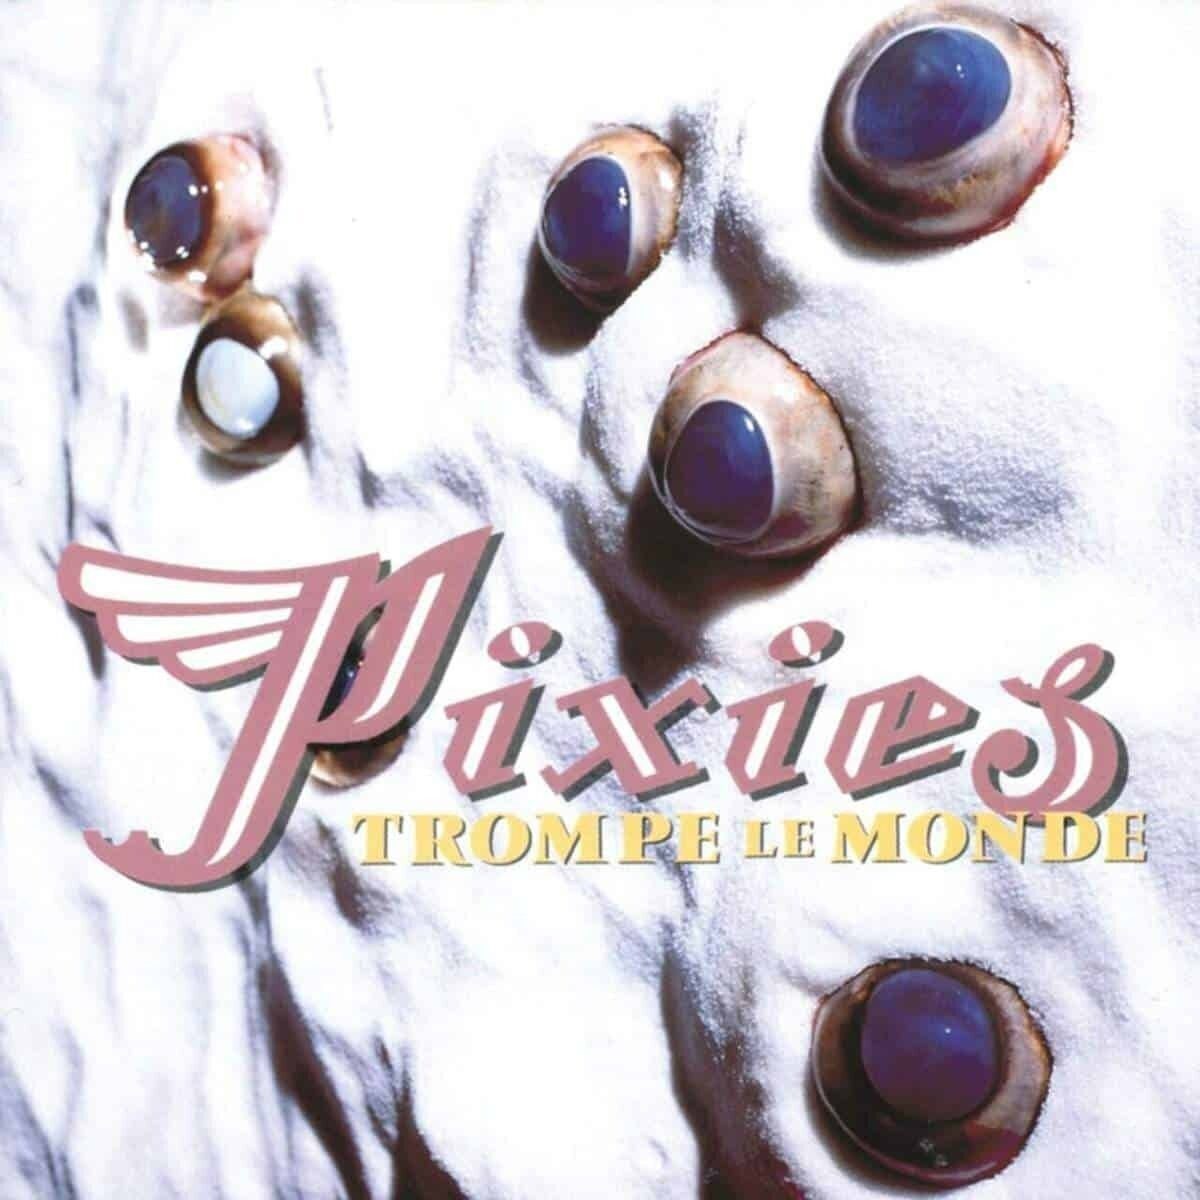 30 лет музыкального обмана: вспоминаем альбом Pixies «Trompe Le Monde»